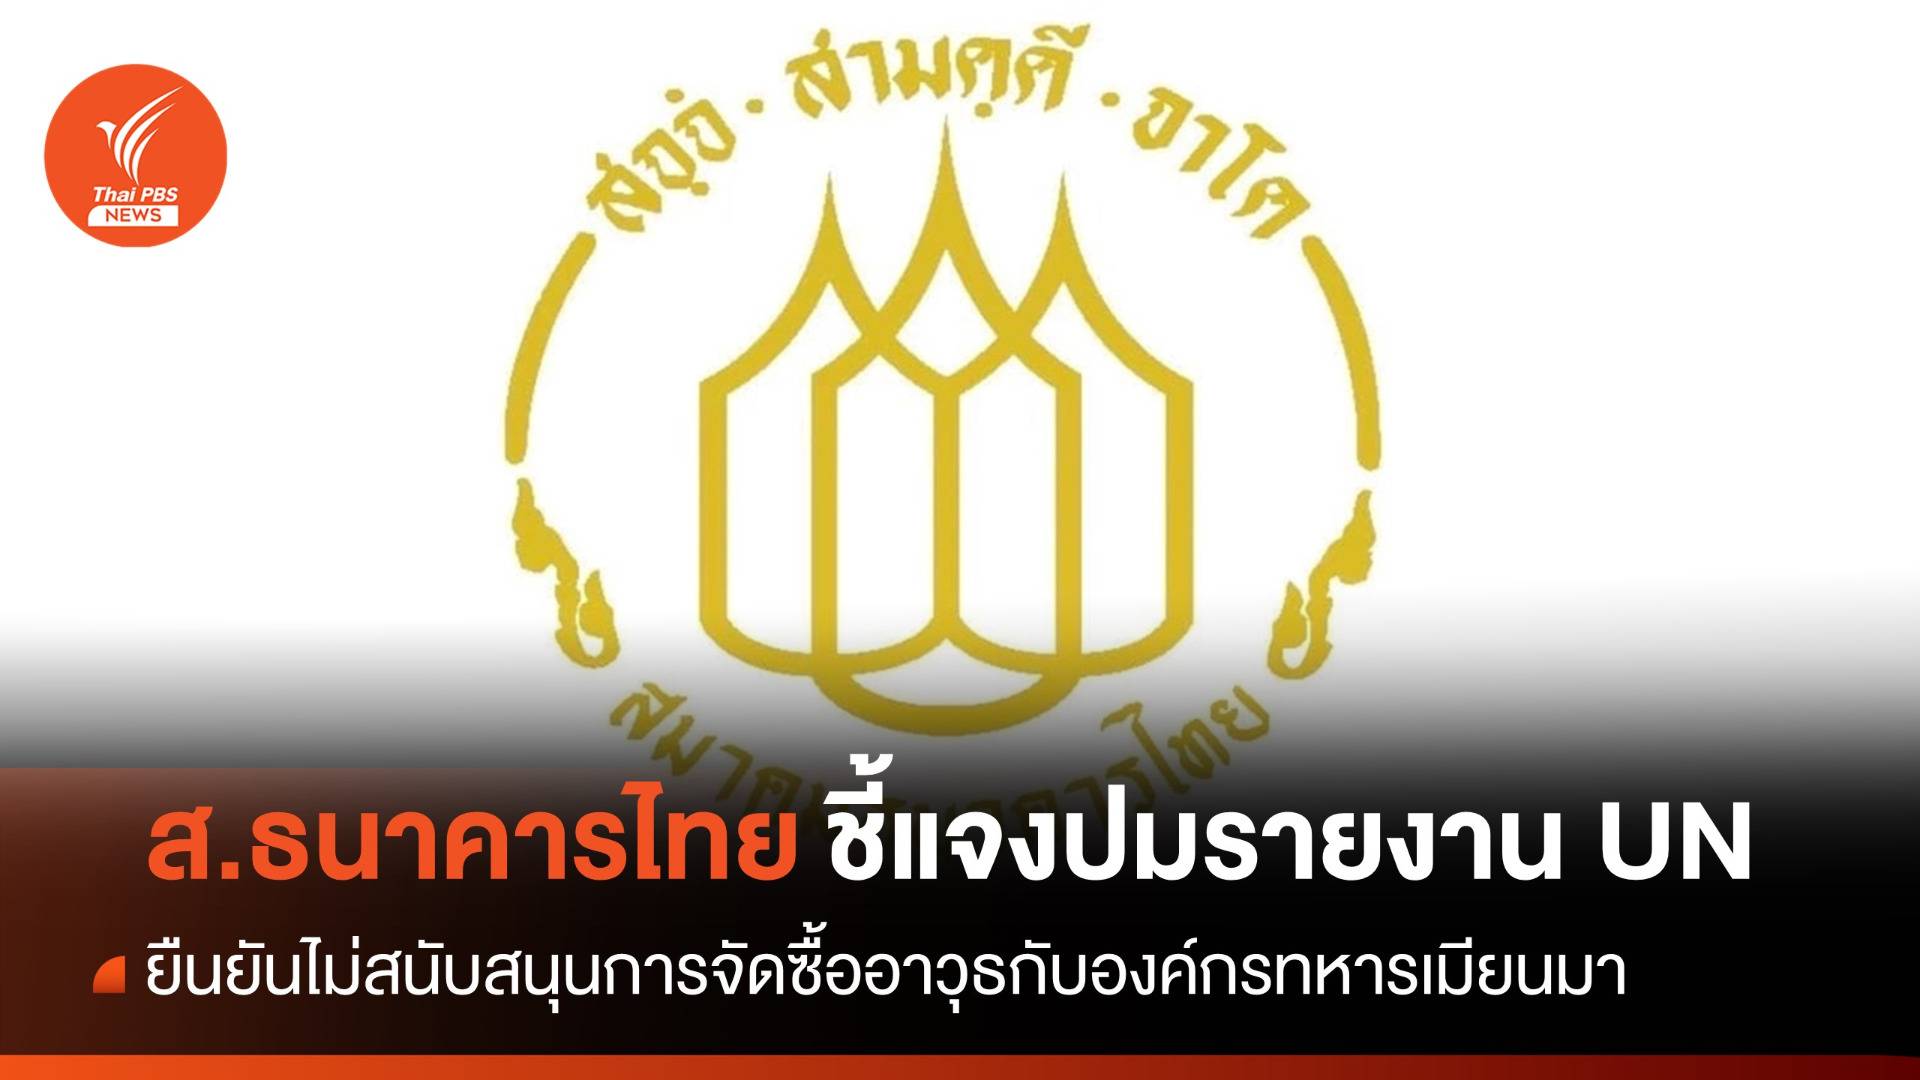 "ส.ธนาคารไทย" ยันไม่สนับสนุนจัดซื้ออาวุธกับองค์กรทหารเมียนมา